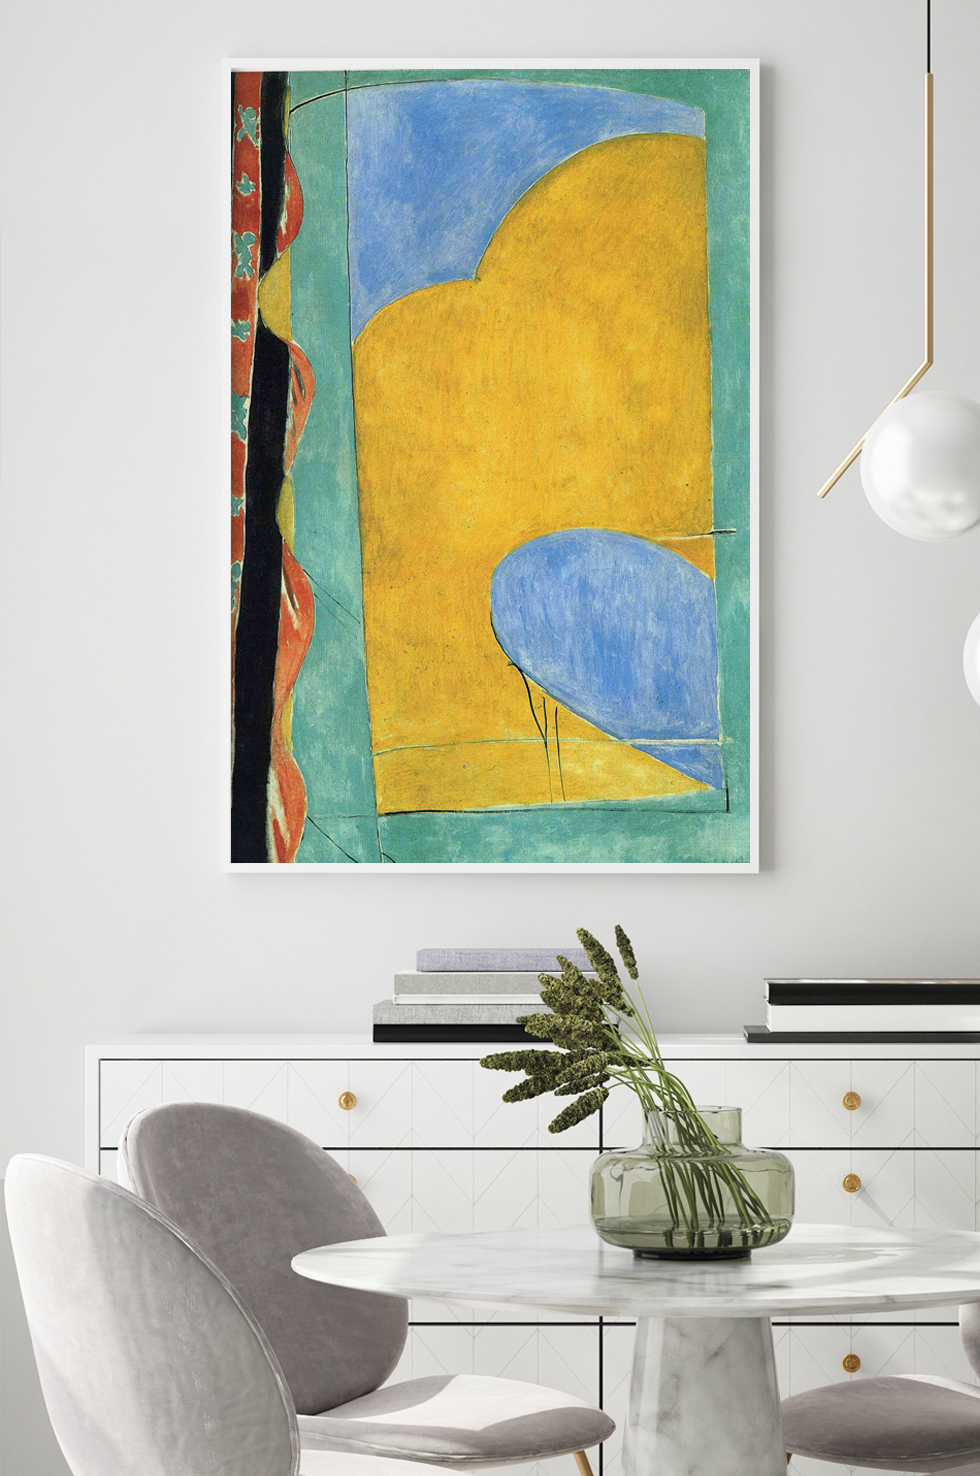 Matisse, Le Rideau Jaune dans une pièce